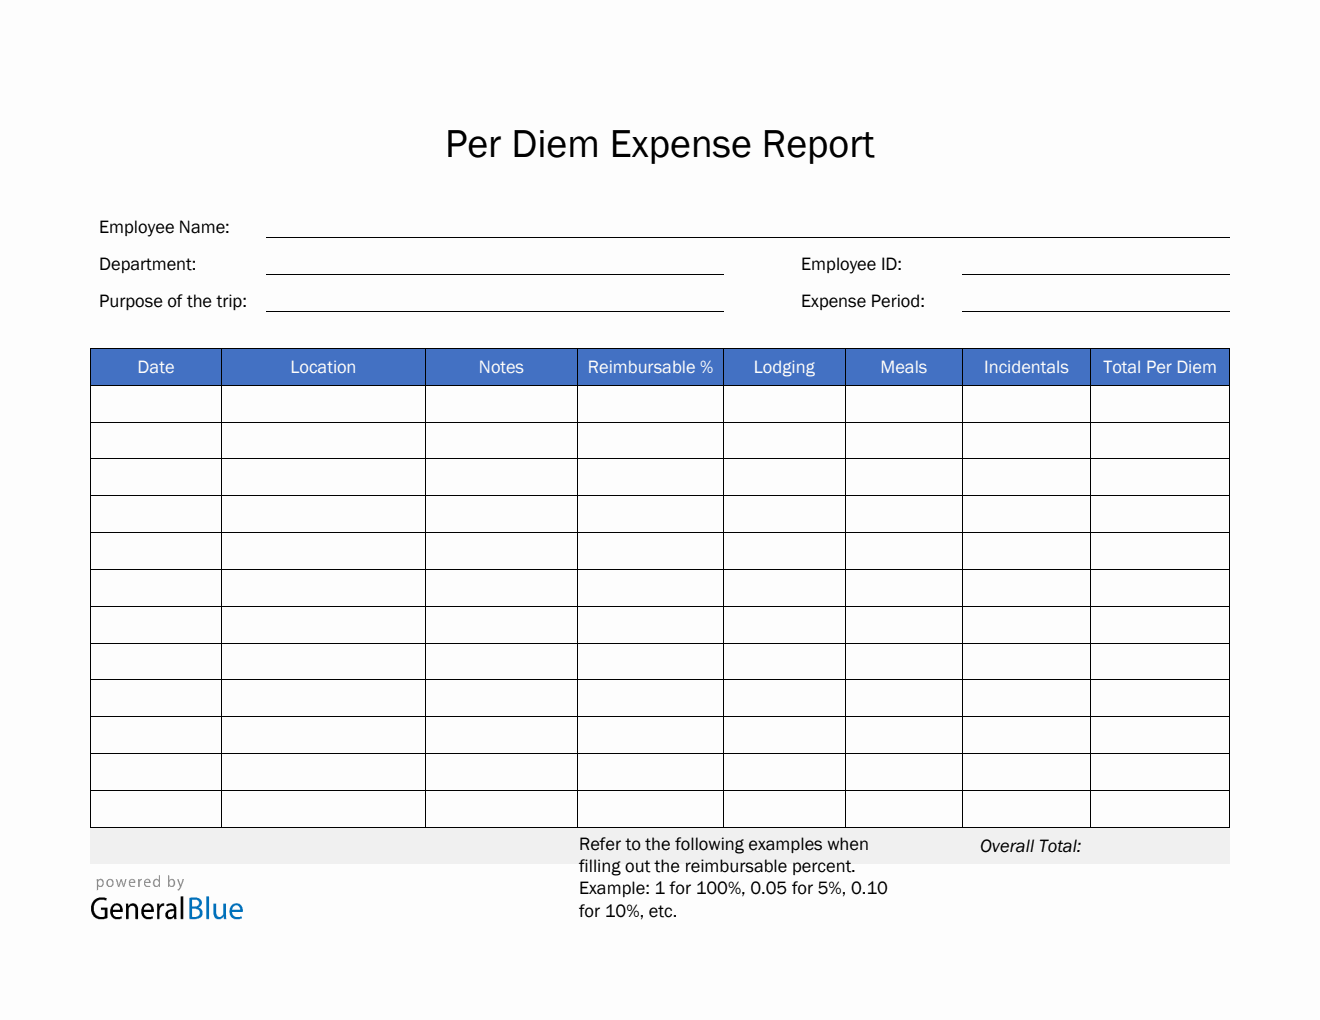 Per Diem Expense Report Template in PDF (Blue)